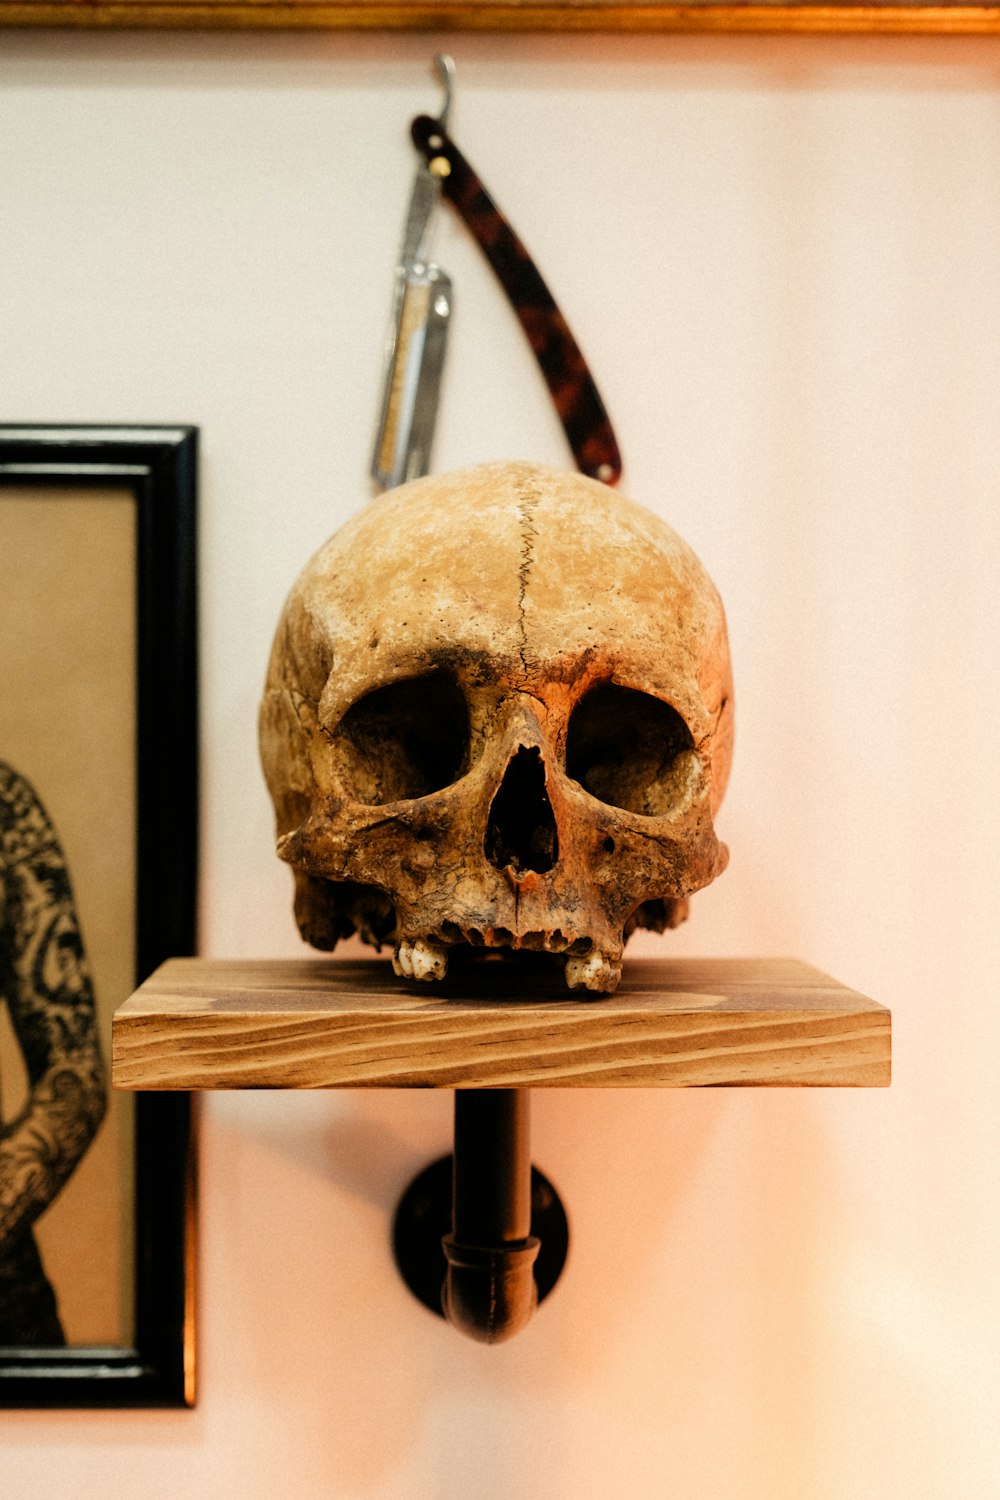 Un cráneo humano falso sentado encima de un estante de madera